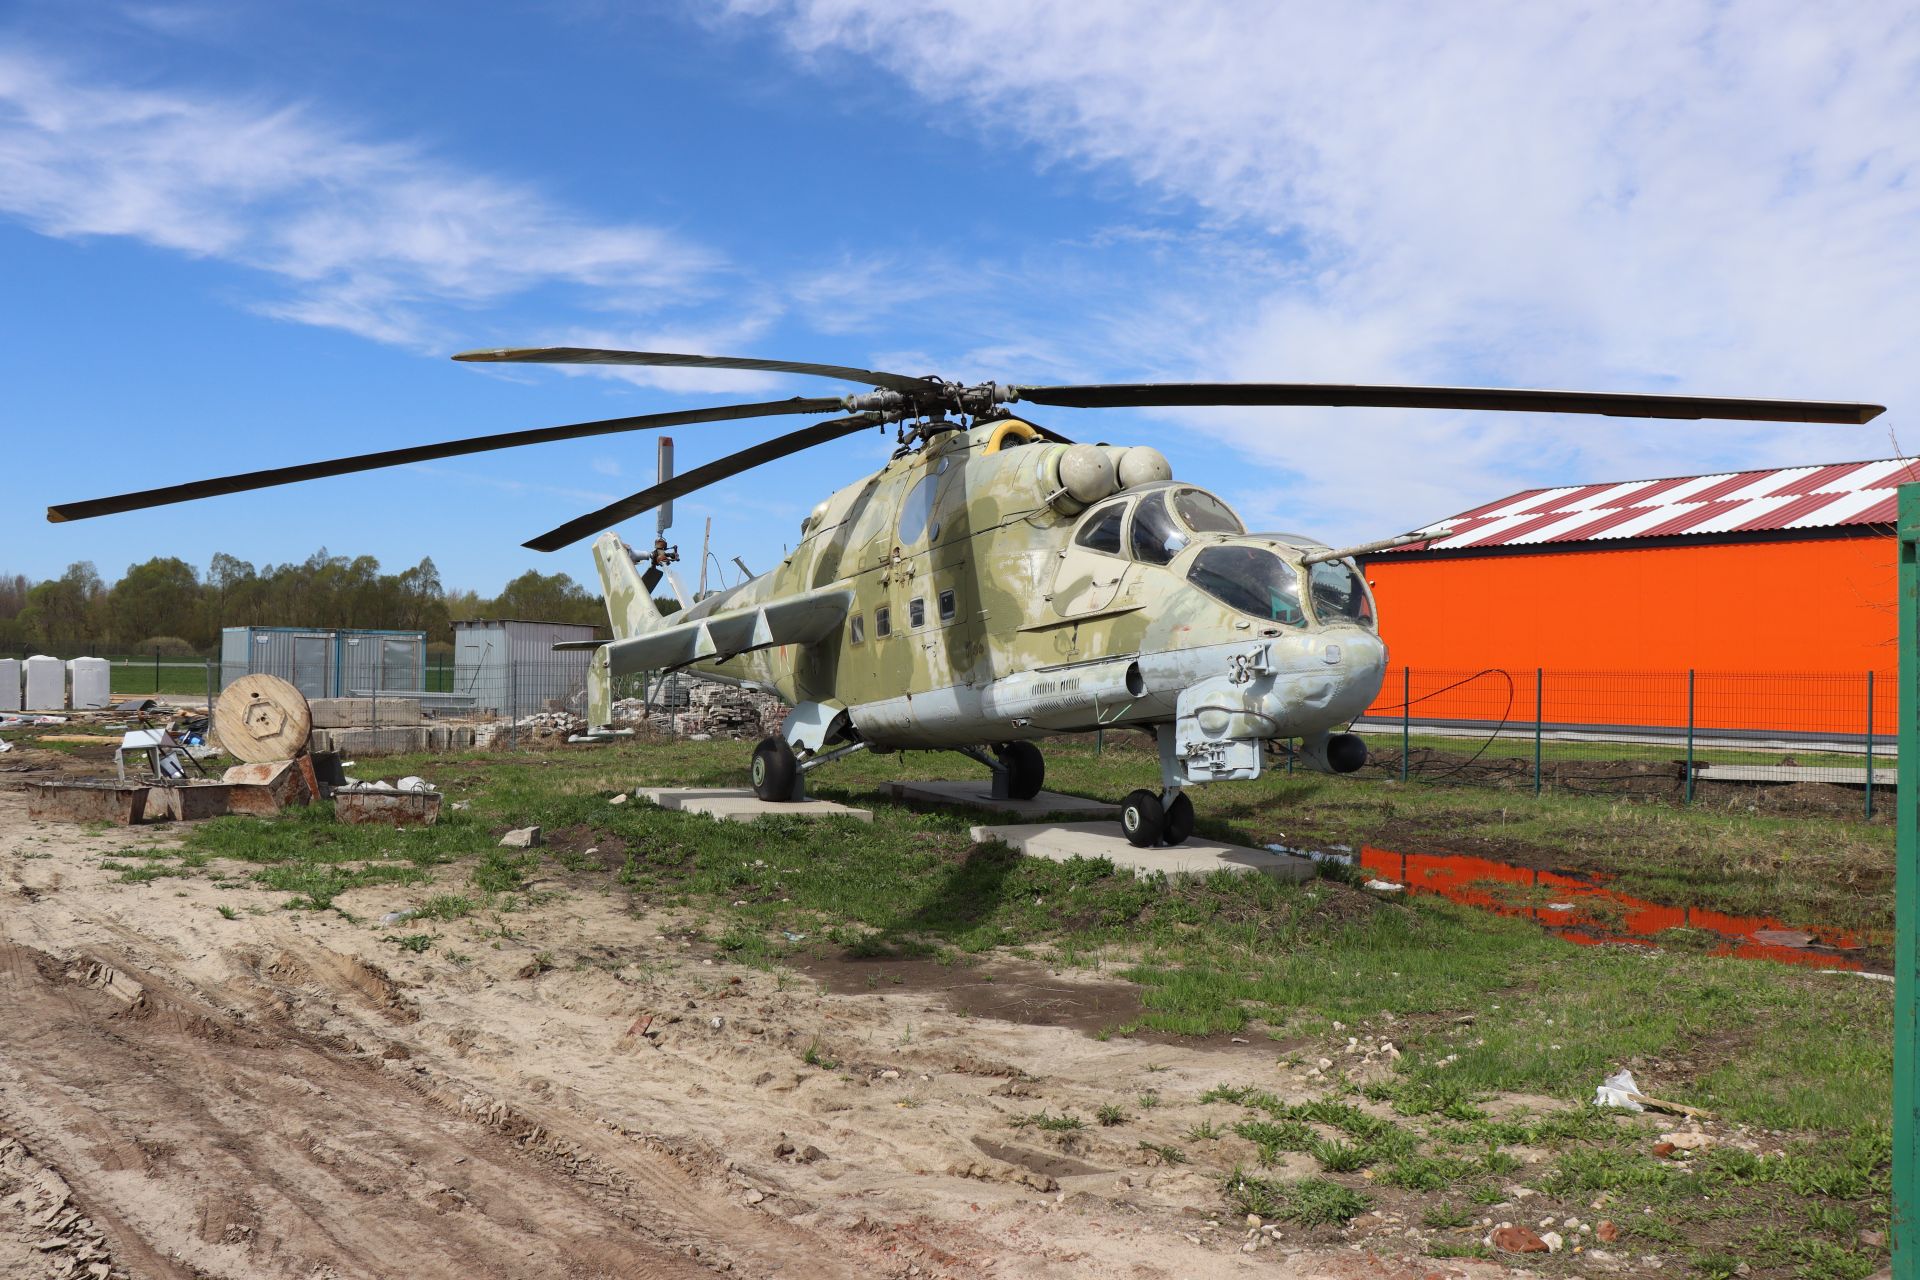 Сотрудники спецподразделений отрабатывали десантирование в Лаишевском районе Татарстана